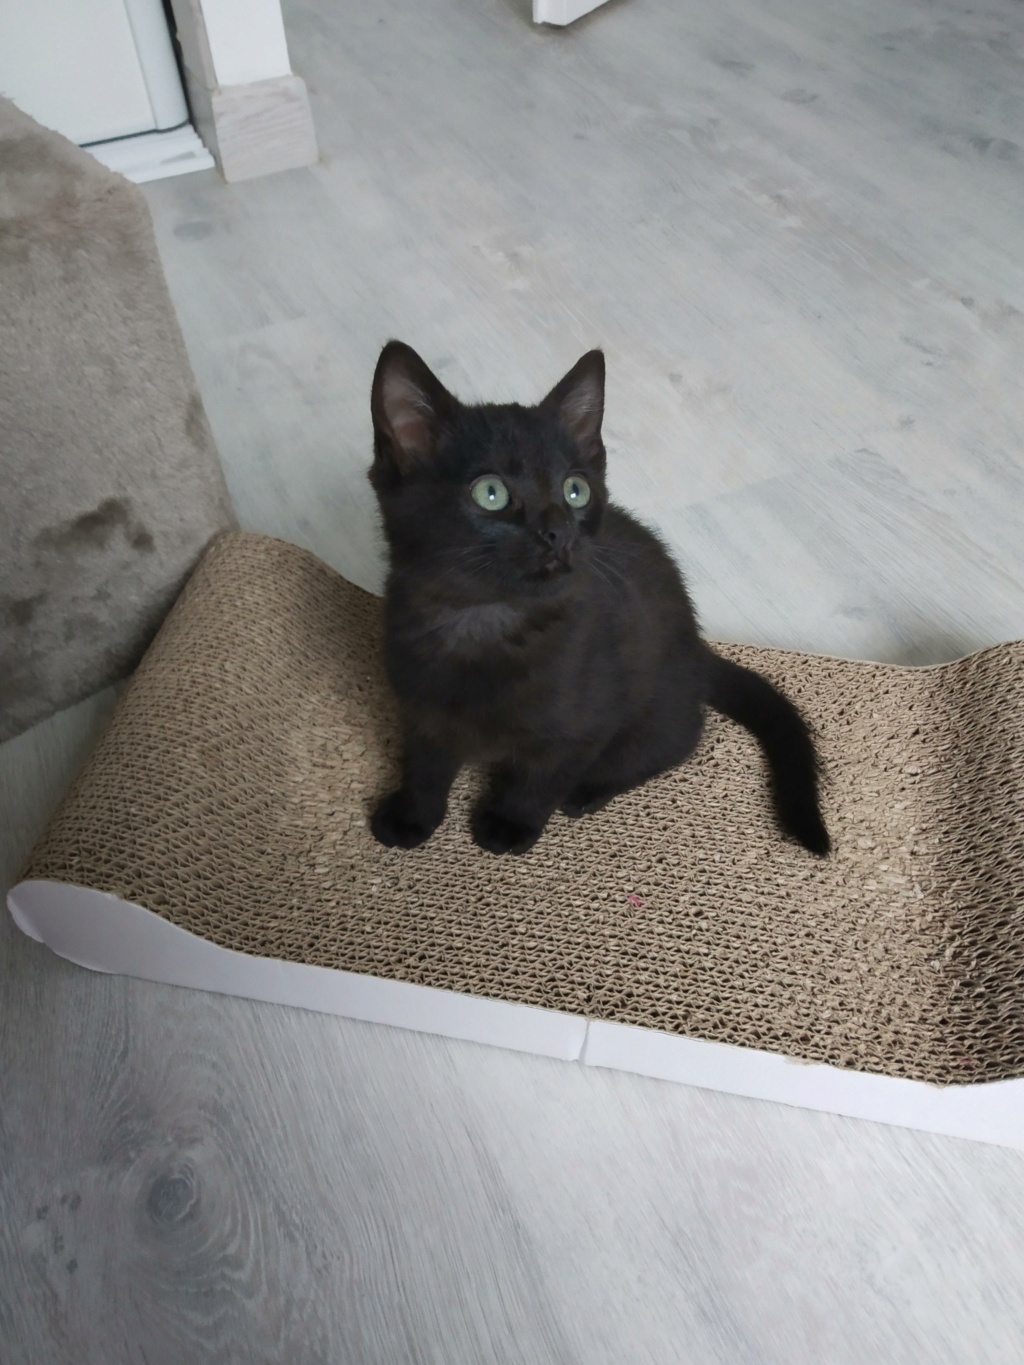 rapido - RAPIDO, chaton mâle noir, né le 30/08/2020 Img_2209